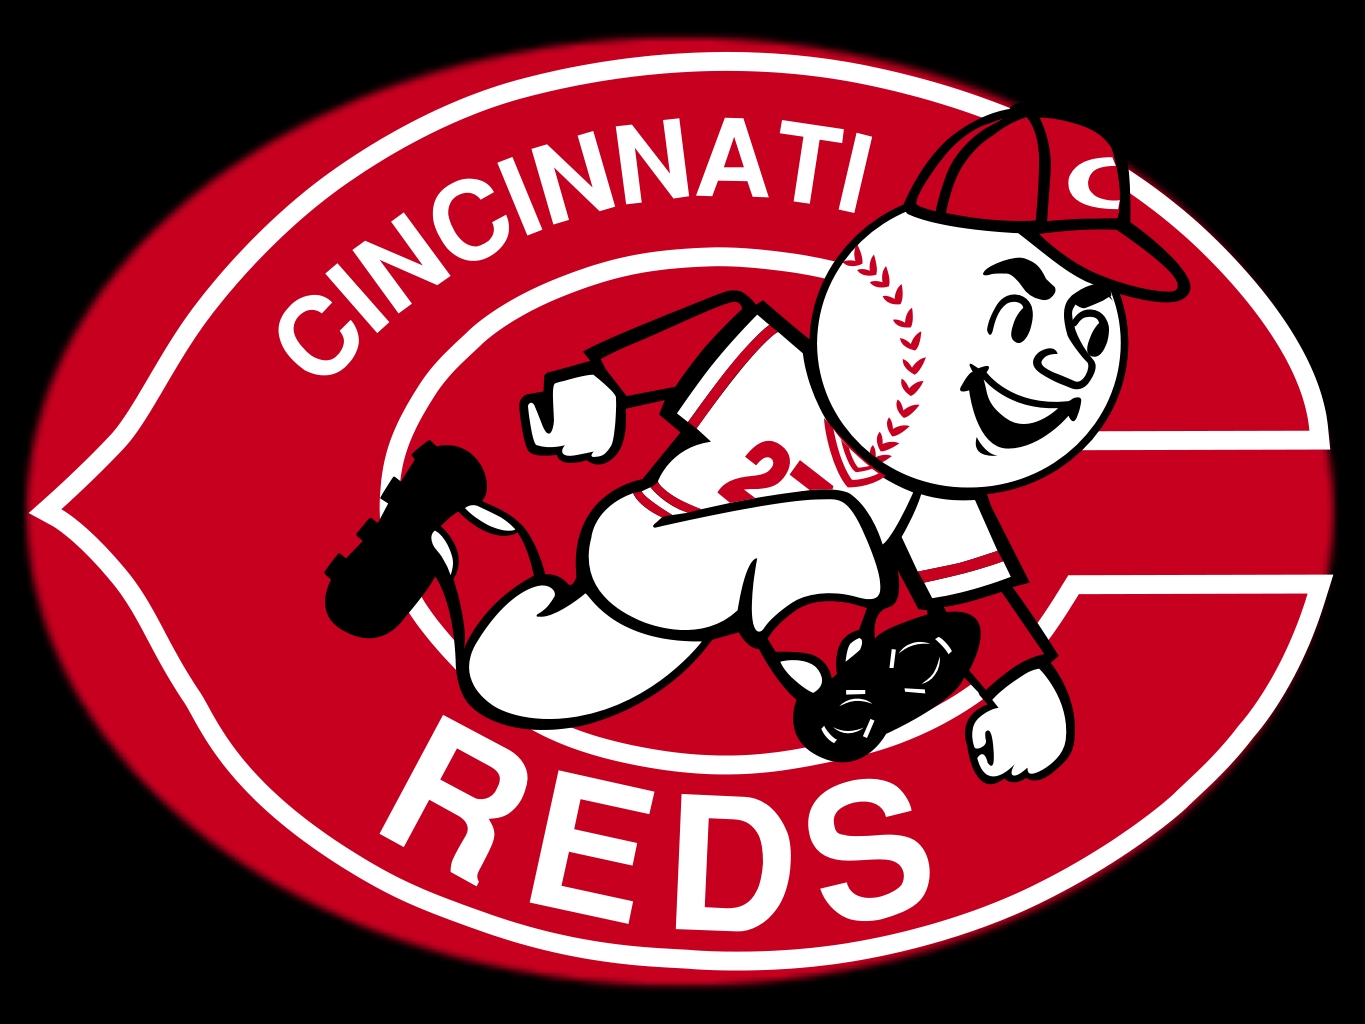 Cincinnati Reds Screensaver And Wallpaper On